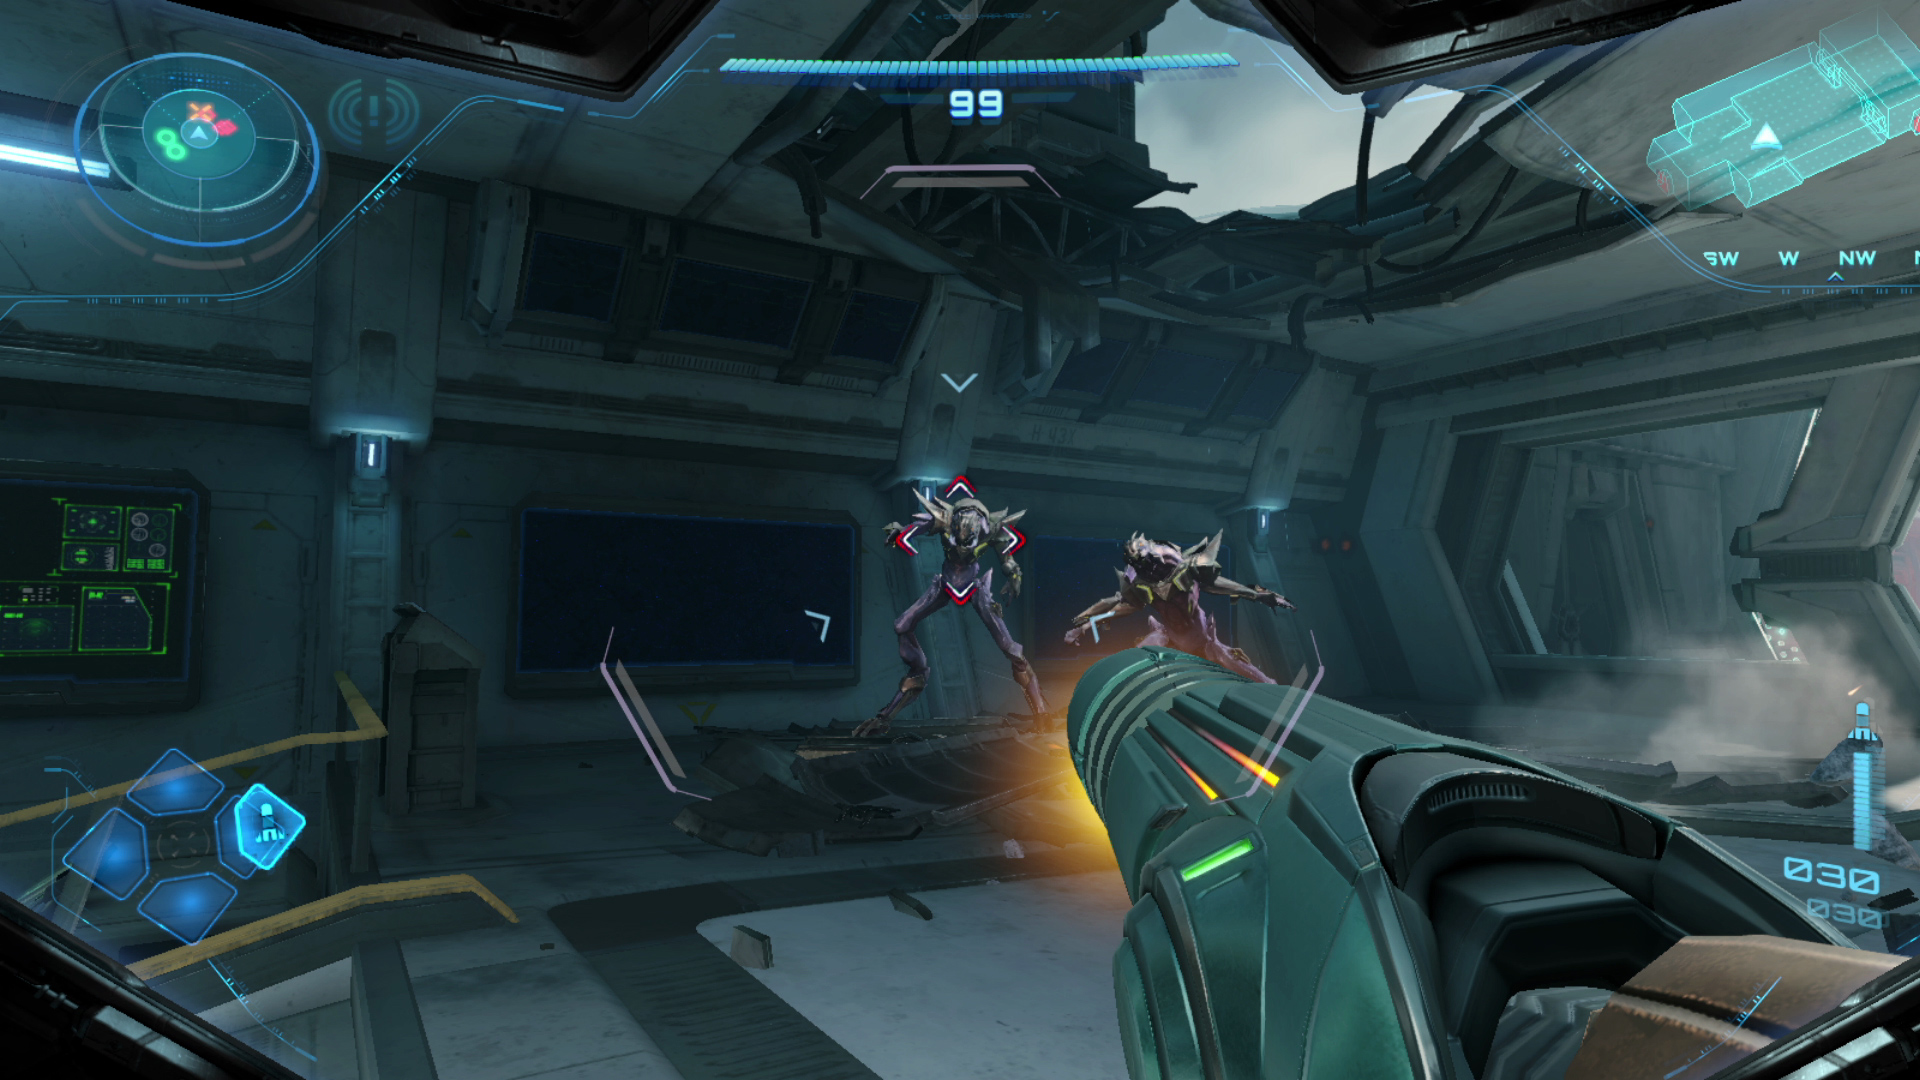 Metroid prime 4 beyond screenshot 12 10